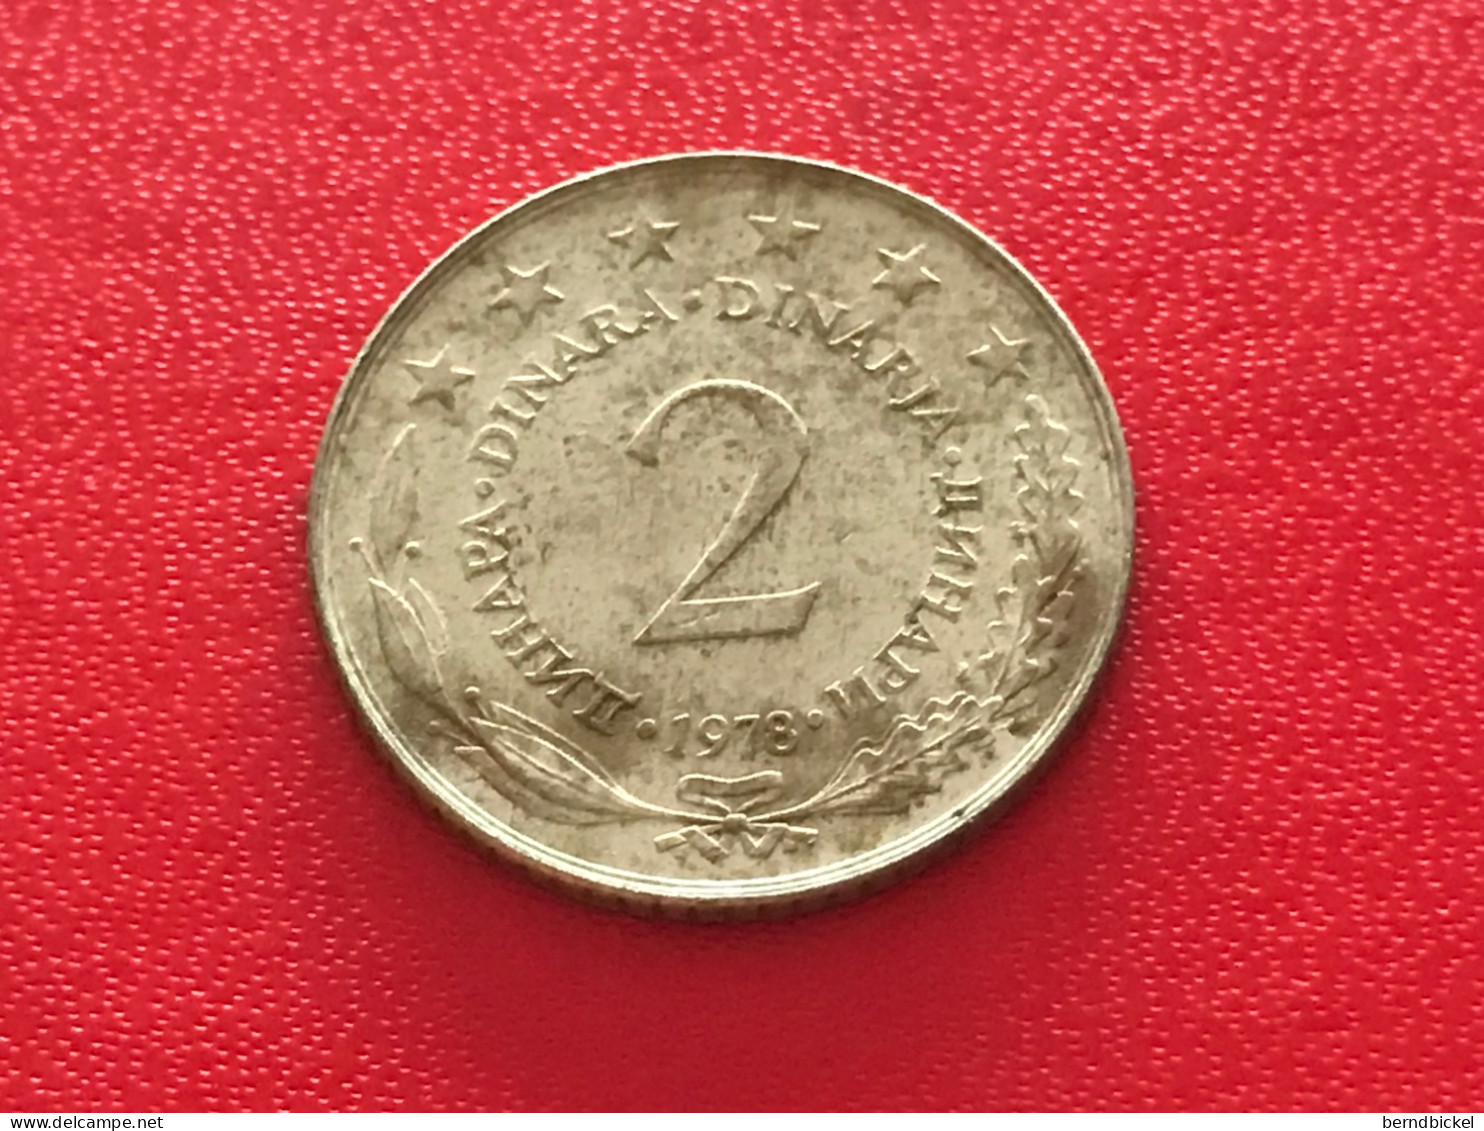 Münze Münzen Umlaufmünze Jugoslawien 2 Dinar 1978 - Yugoslavia